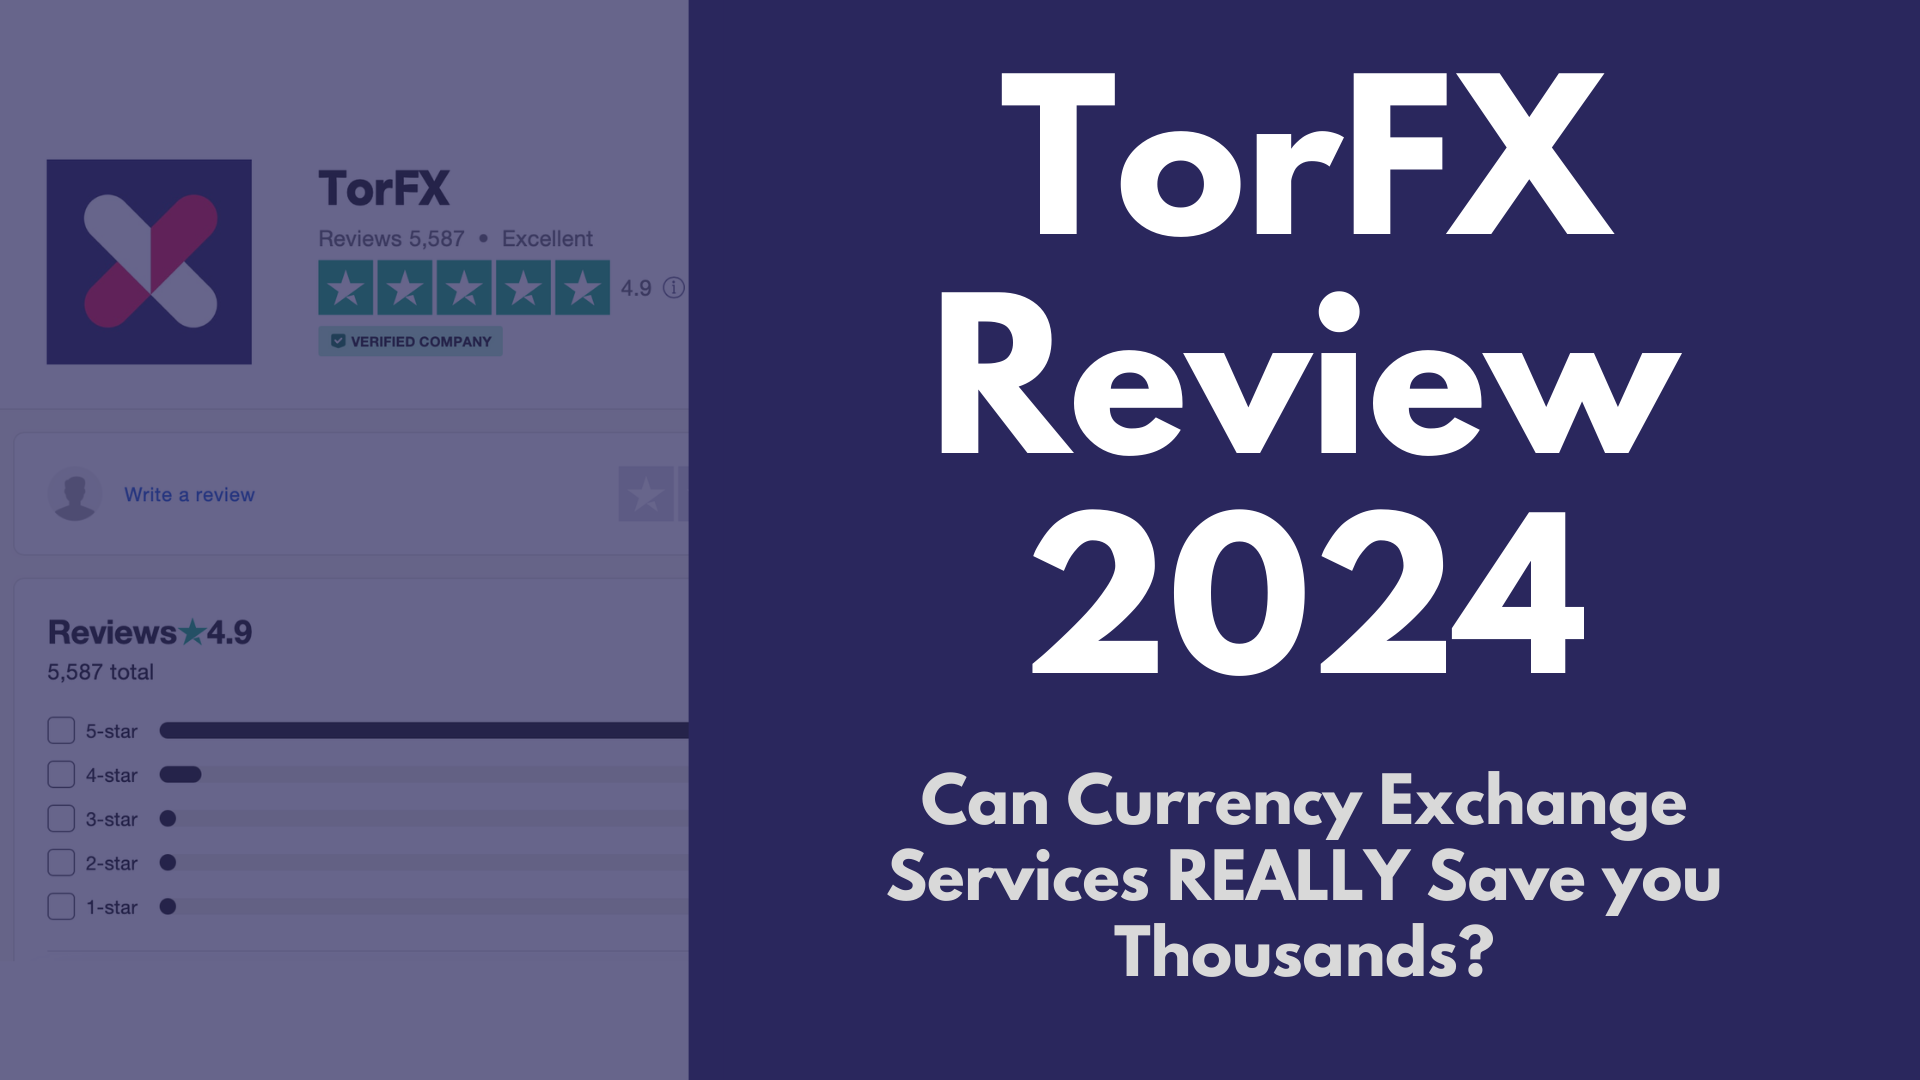 TorFX Review 2024